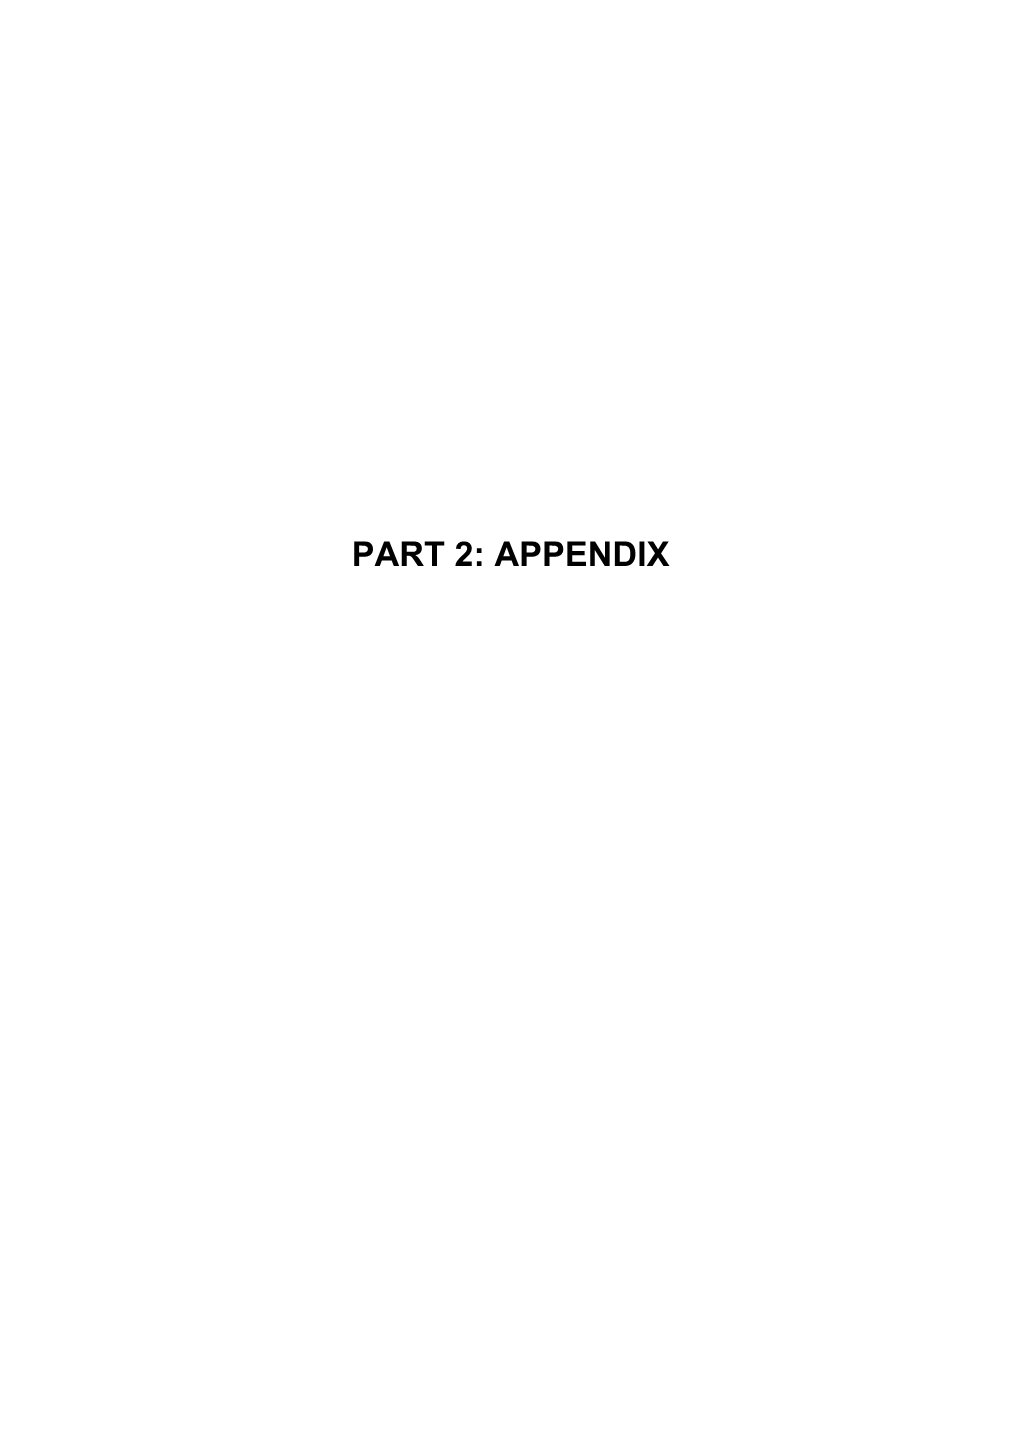 Part 2: Appendix